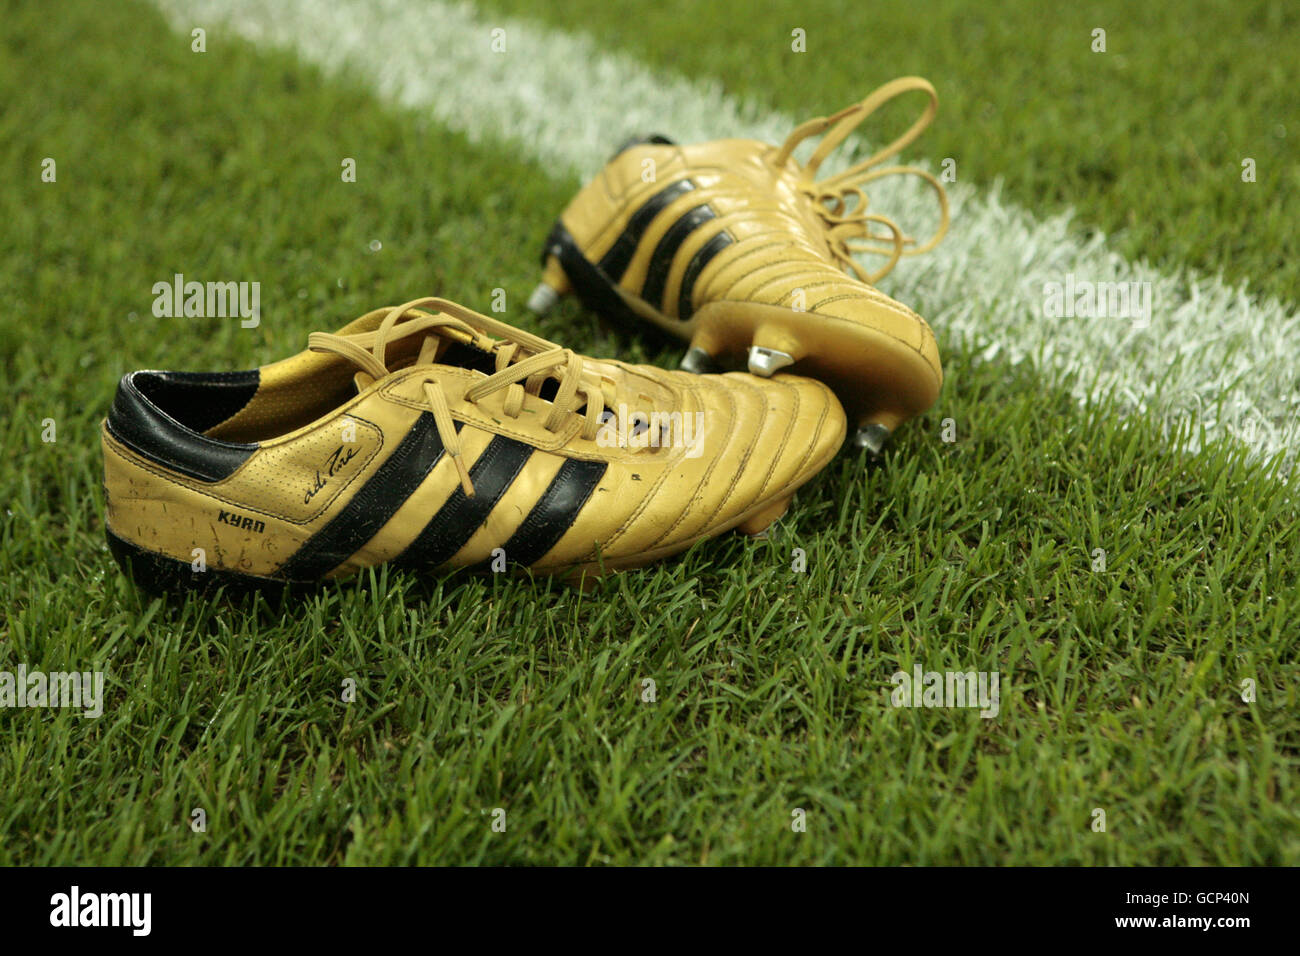 Detalle de botas de adidas doradas el campo fotografías imágenes de alta resolución - Alamy